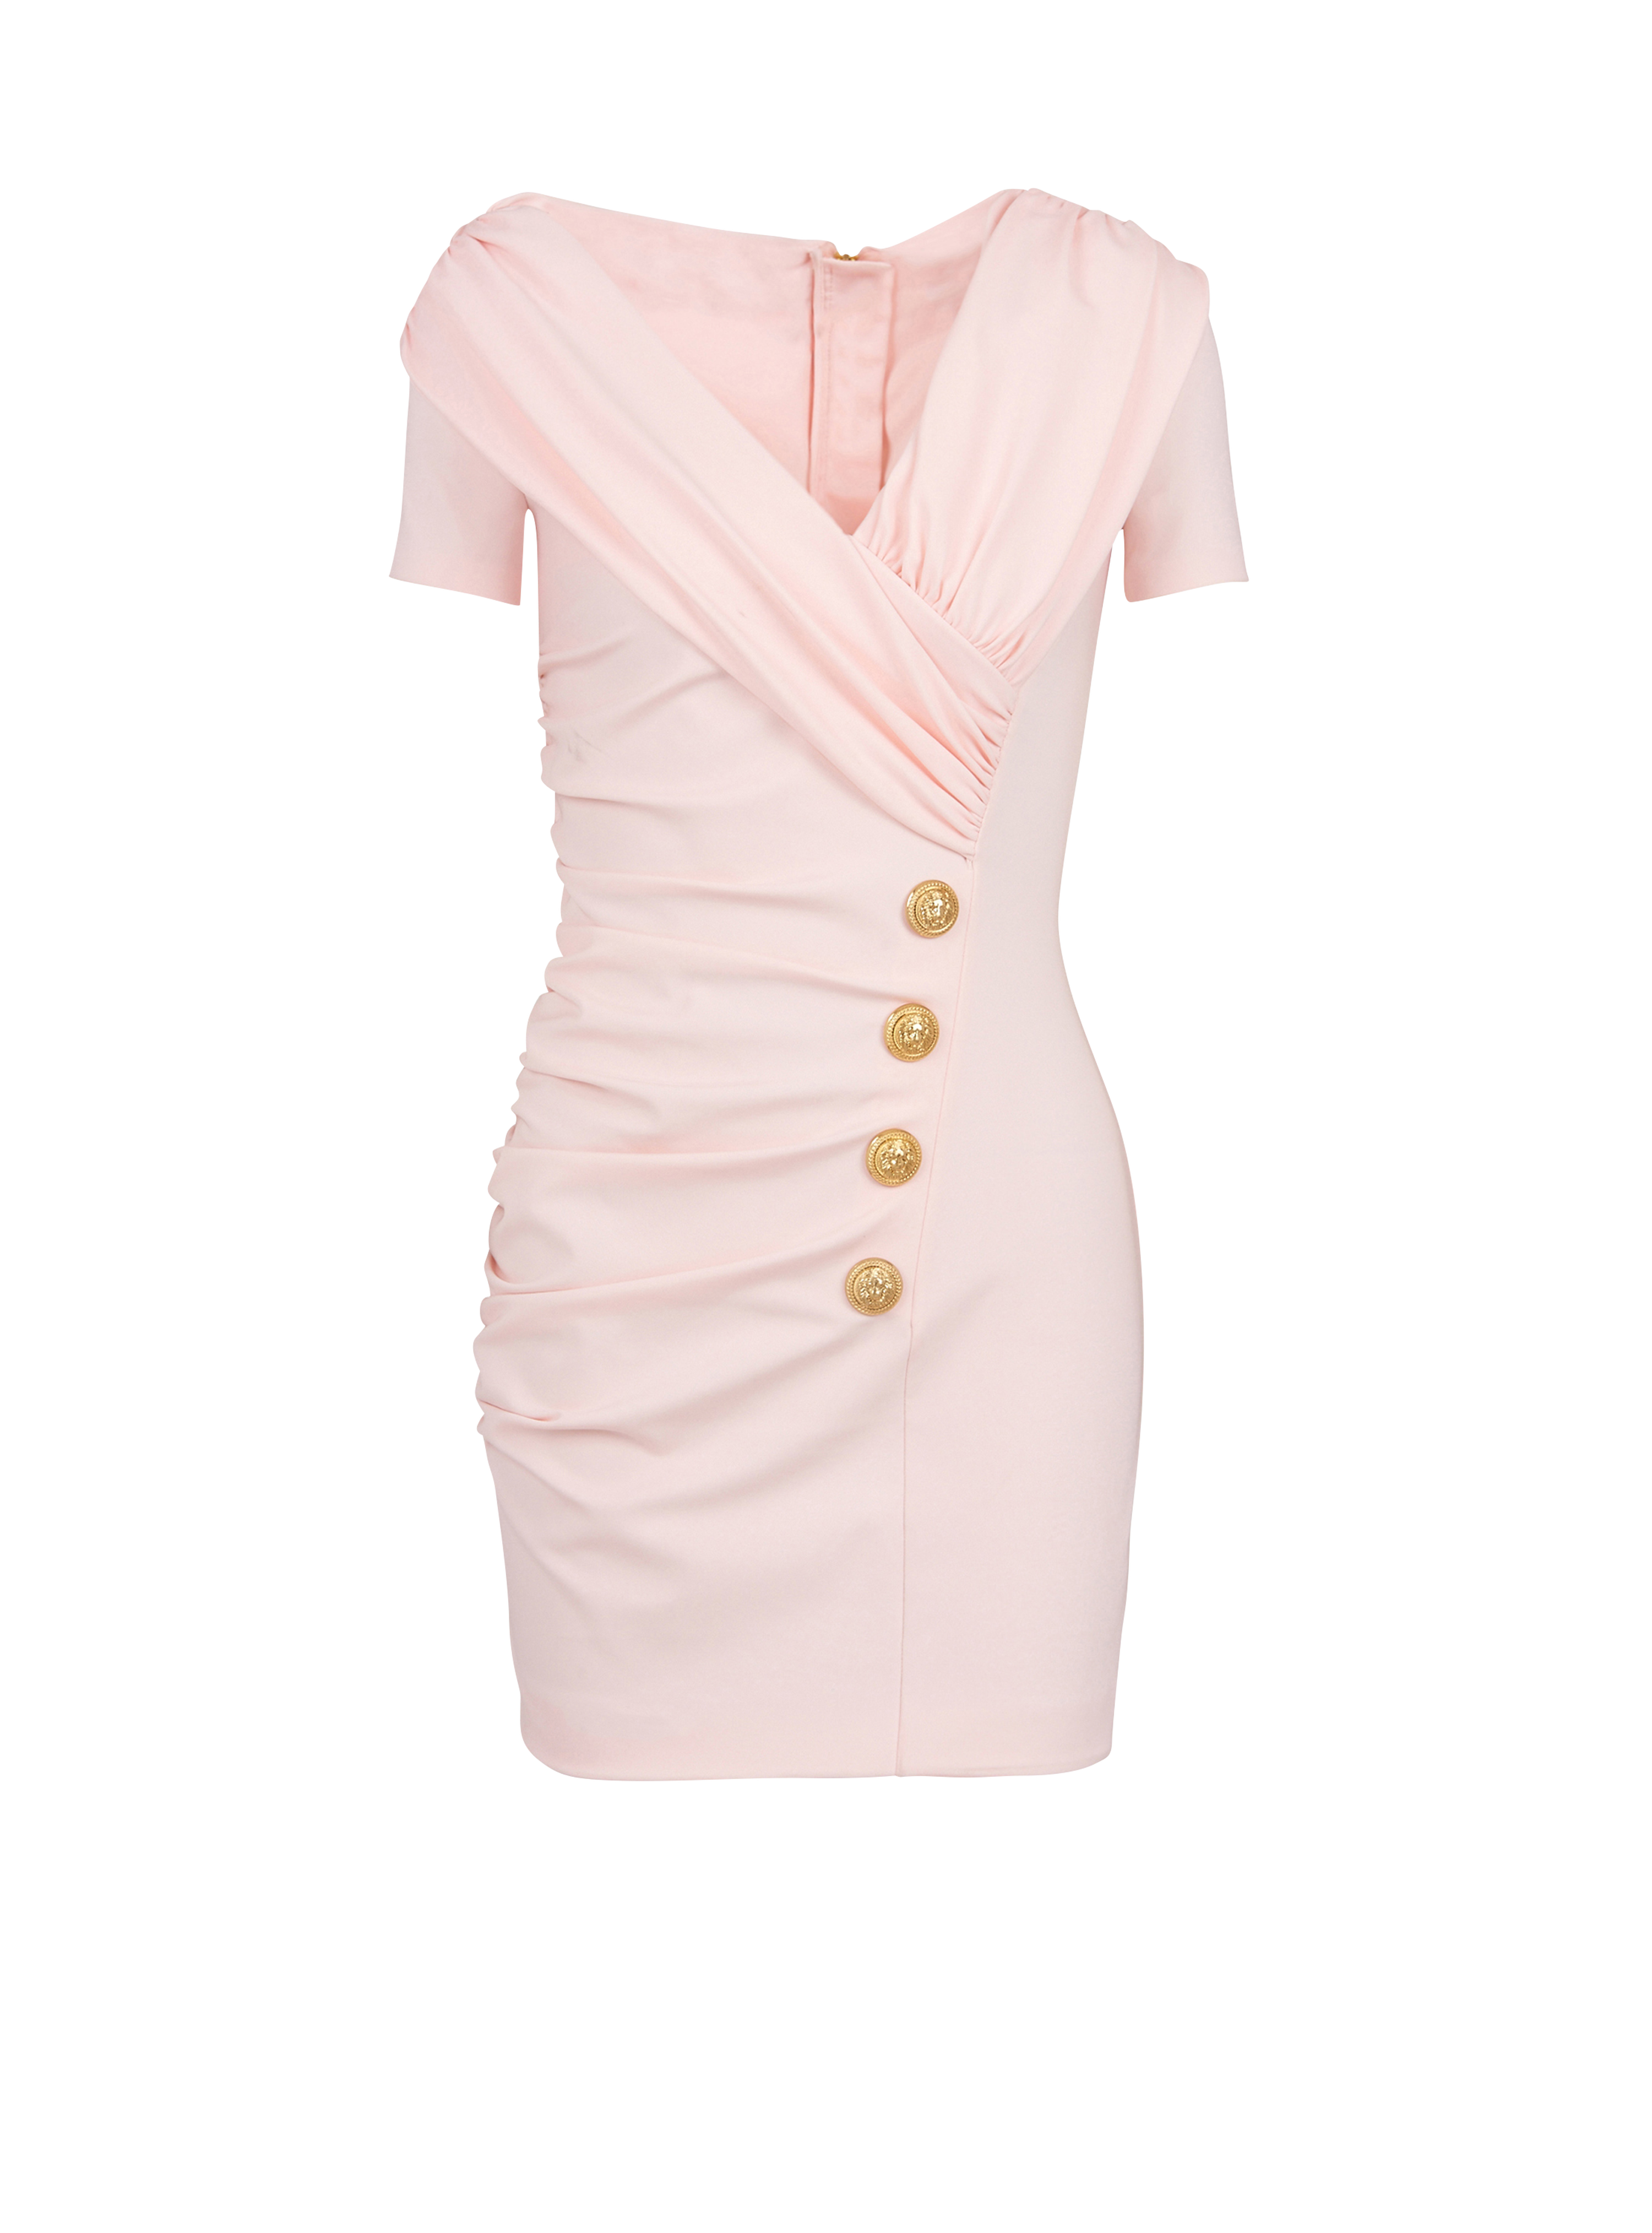 短款垂褶平纹针织露肩连衣裙, pink